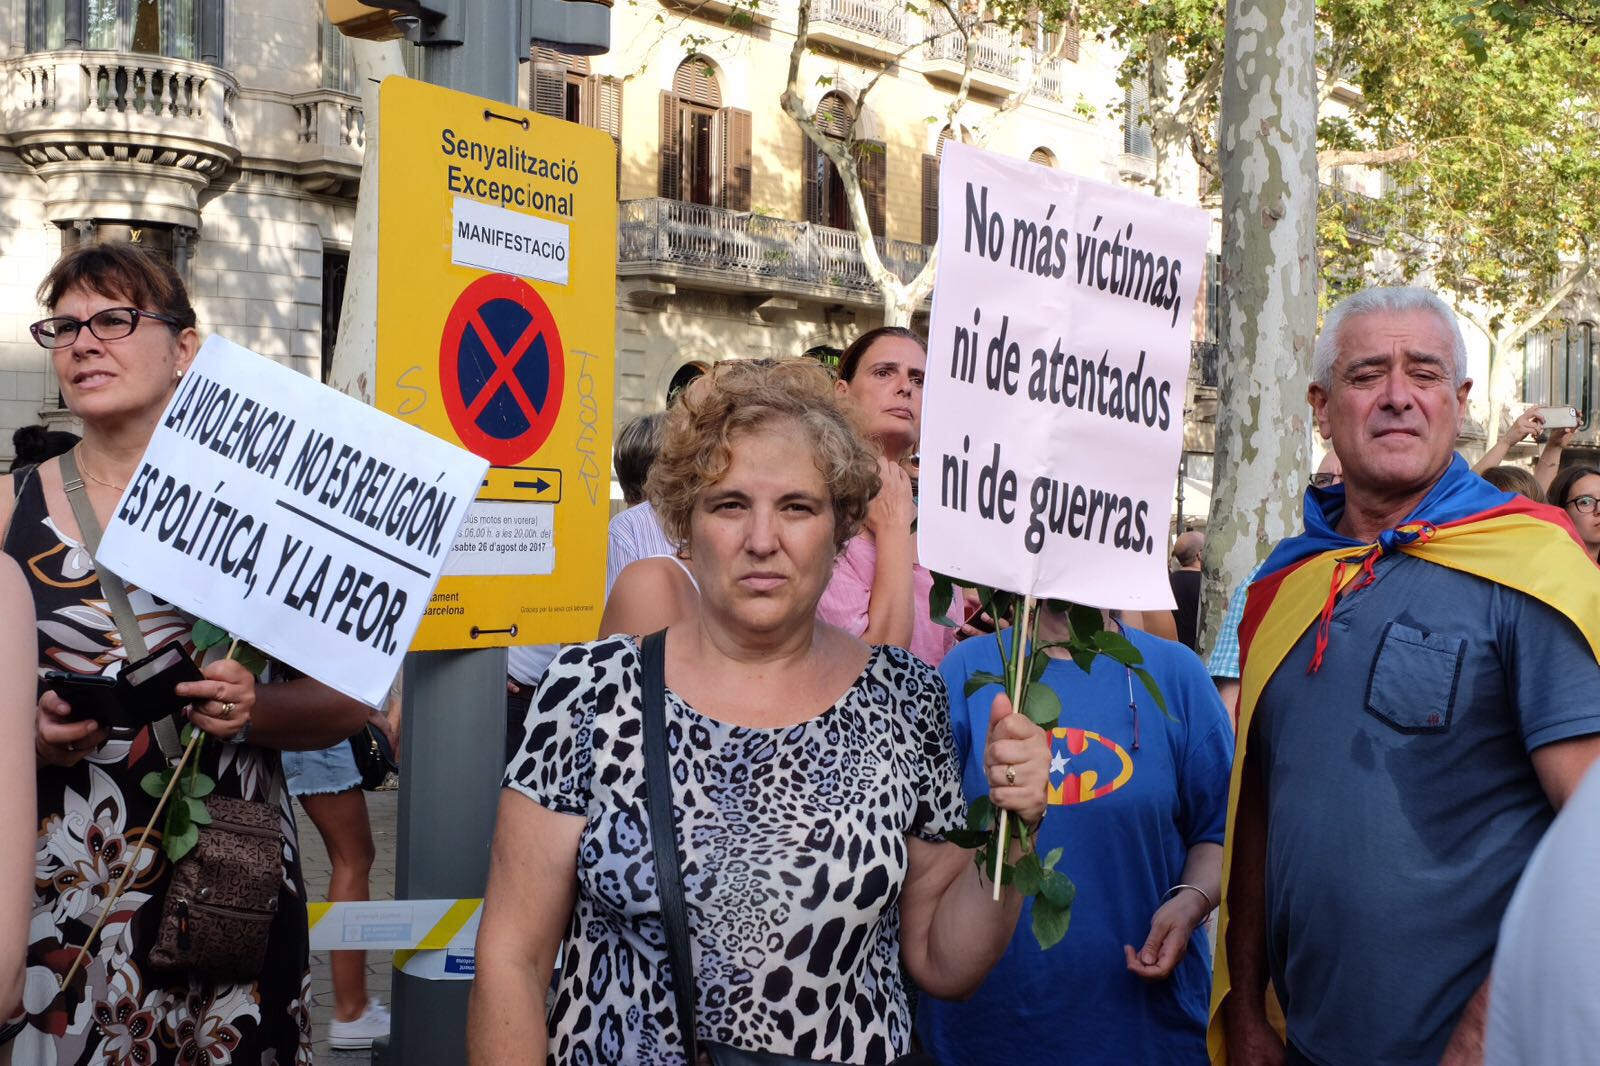 La manifestación de Barcelona contra el terrorismo, en imágenes 10